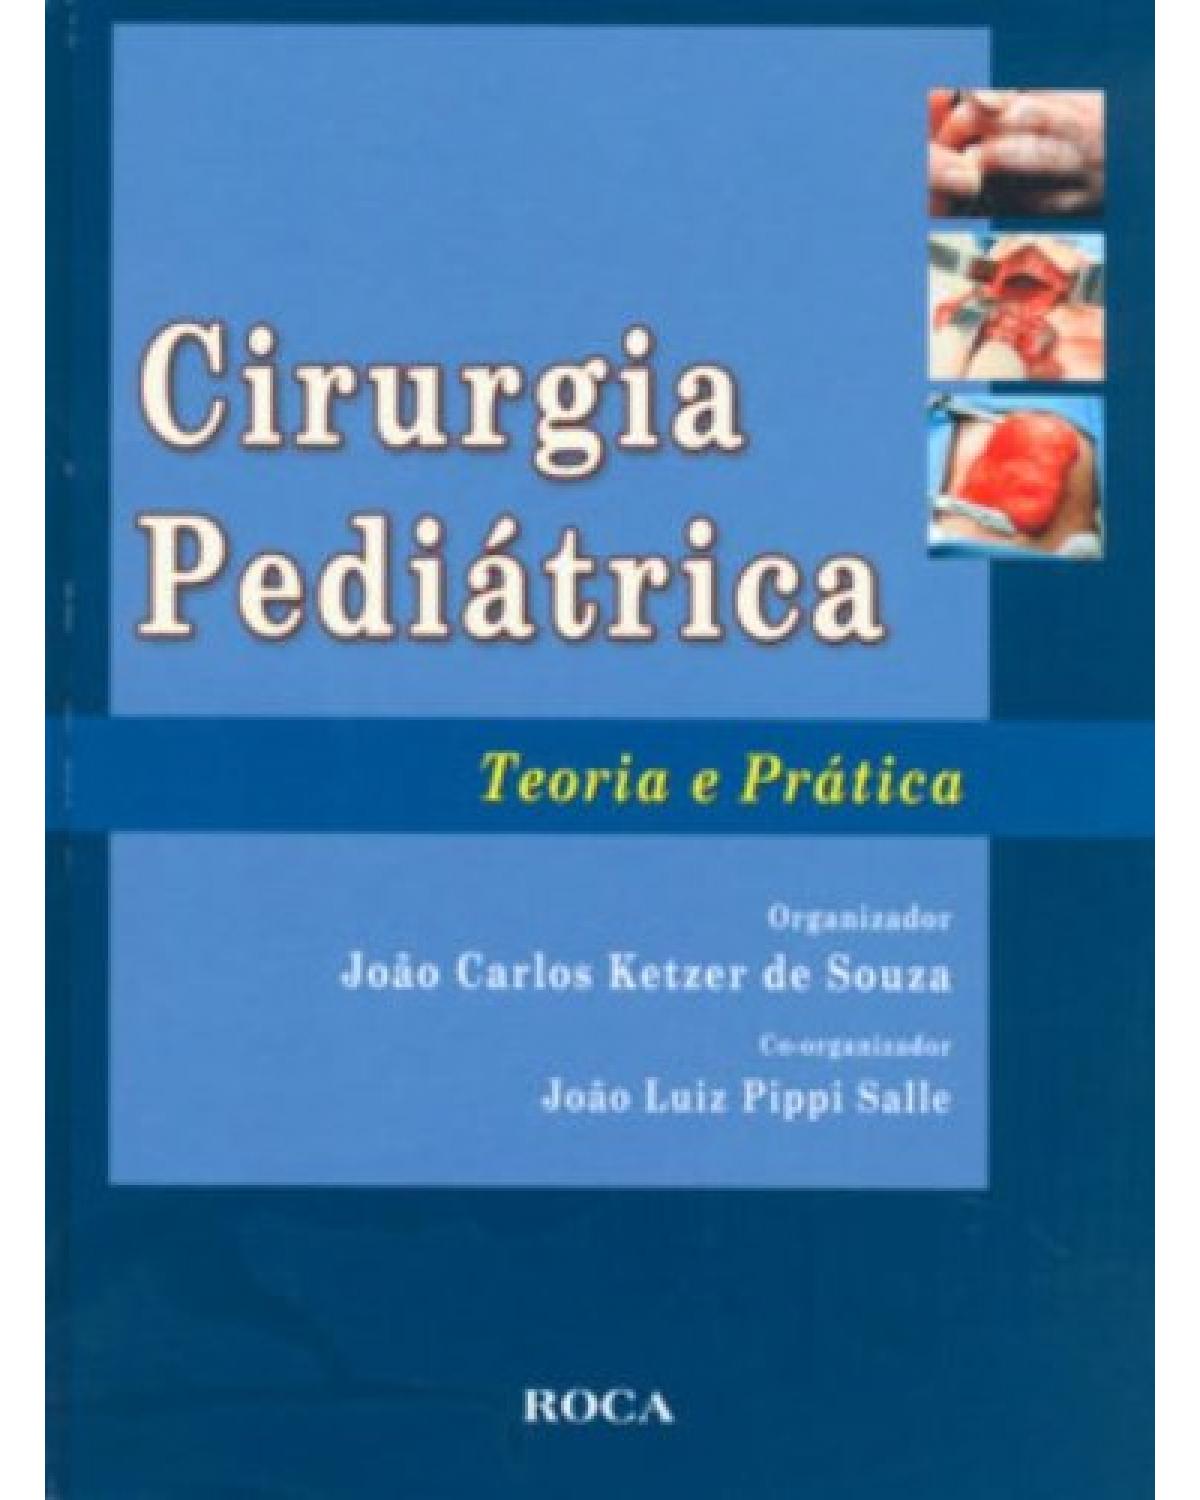 Cirurgia pediátrica - Teoria e prática - 1ª Edição | 2008